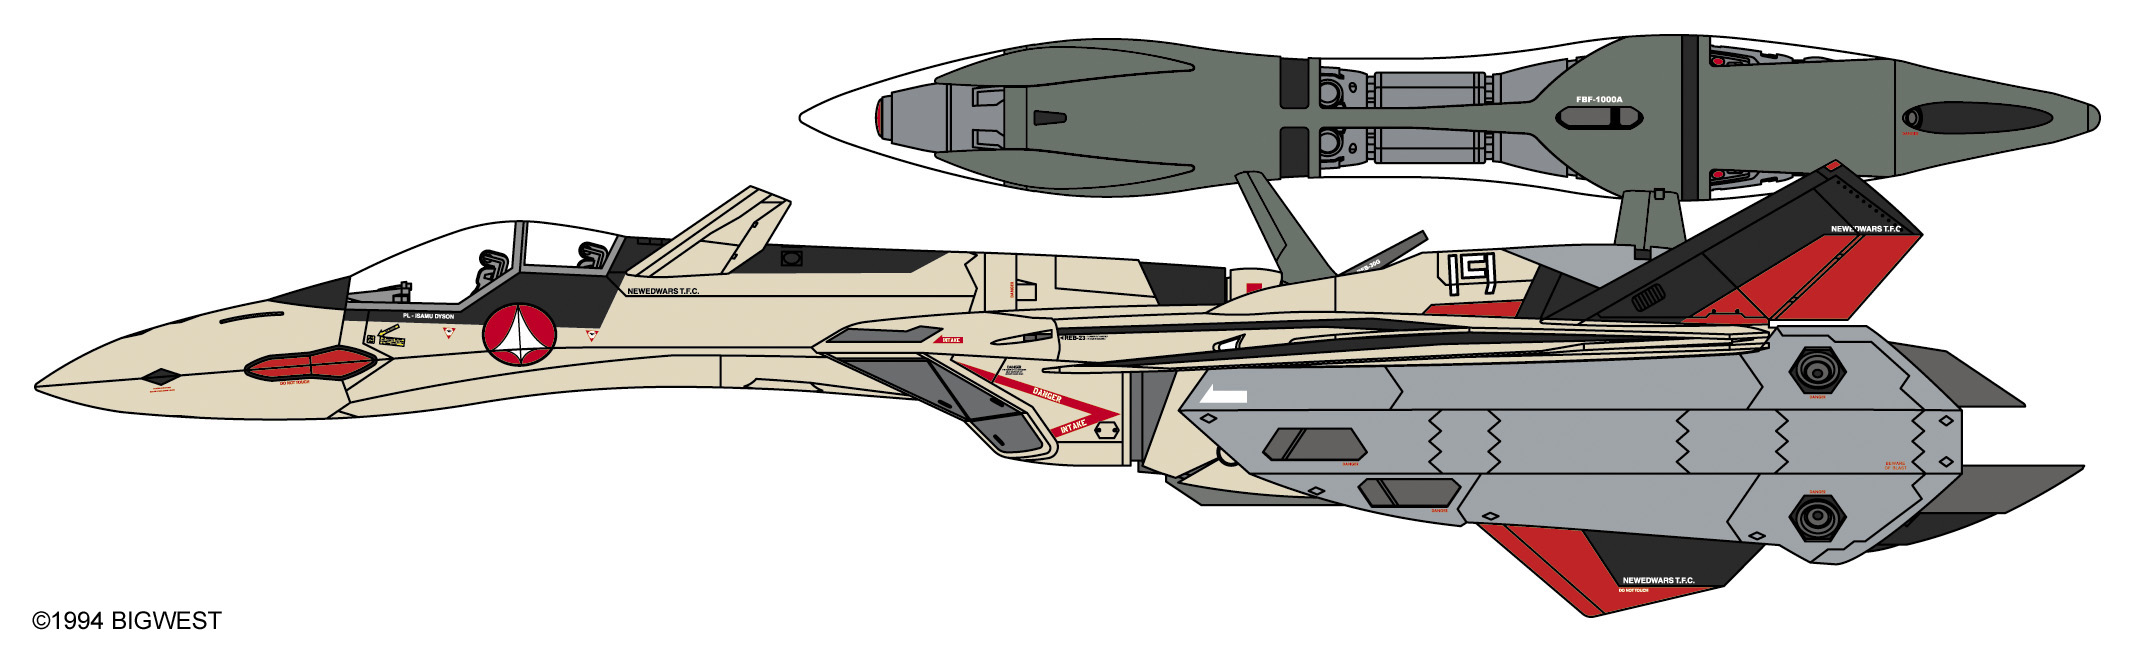 YF-19 W/Fast Pack & Fold Booster - Macross 1/72